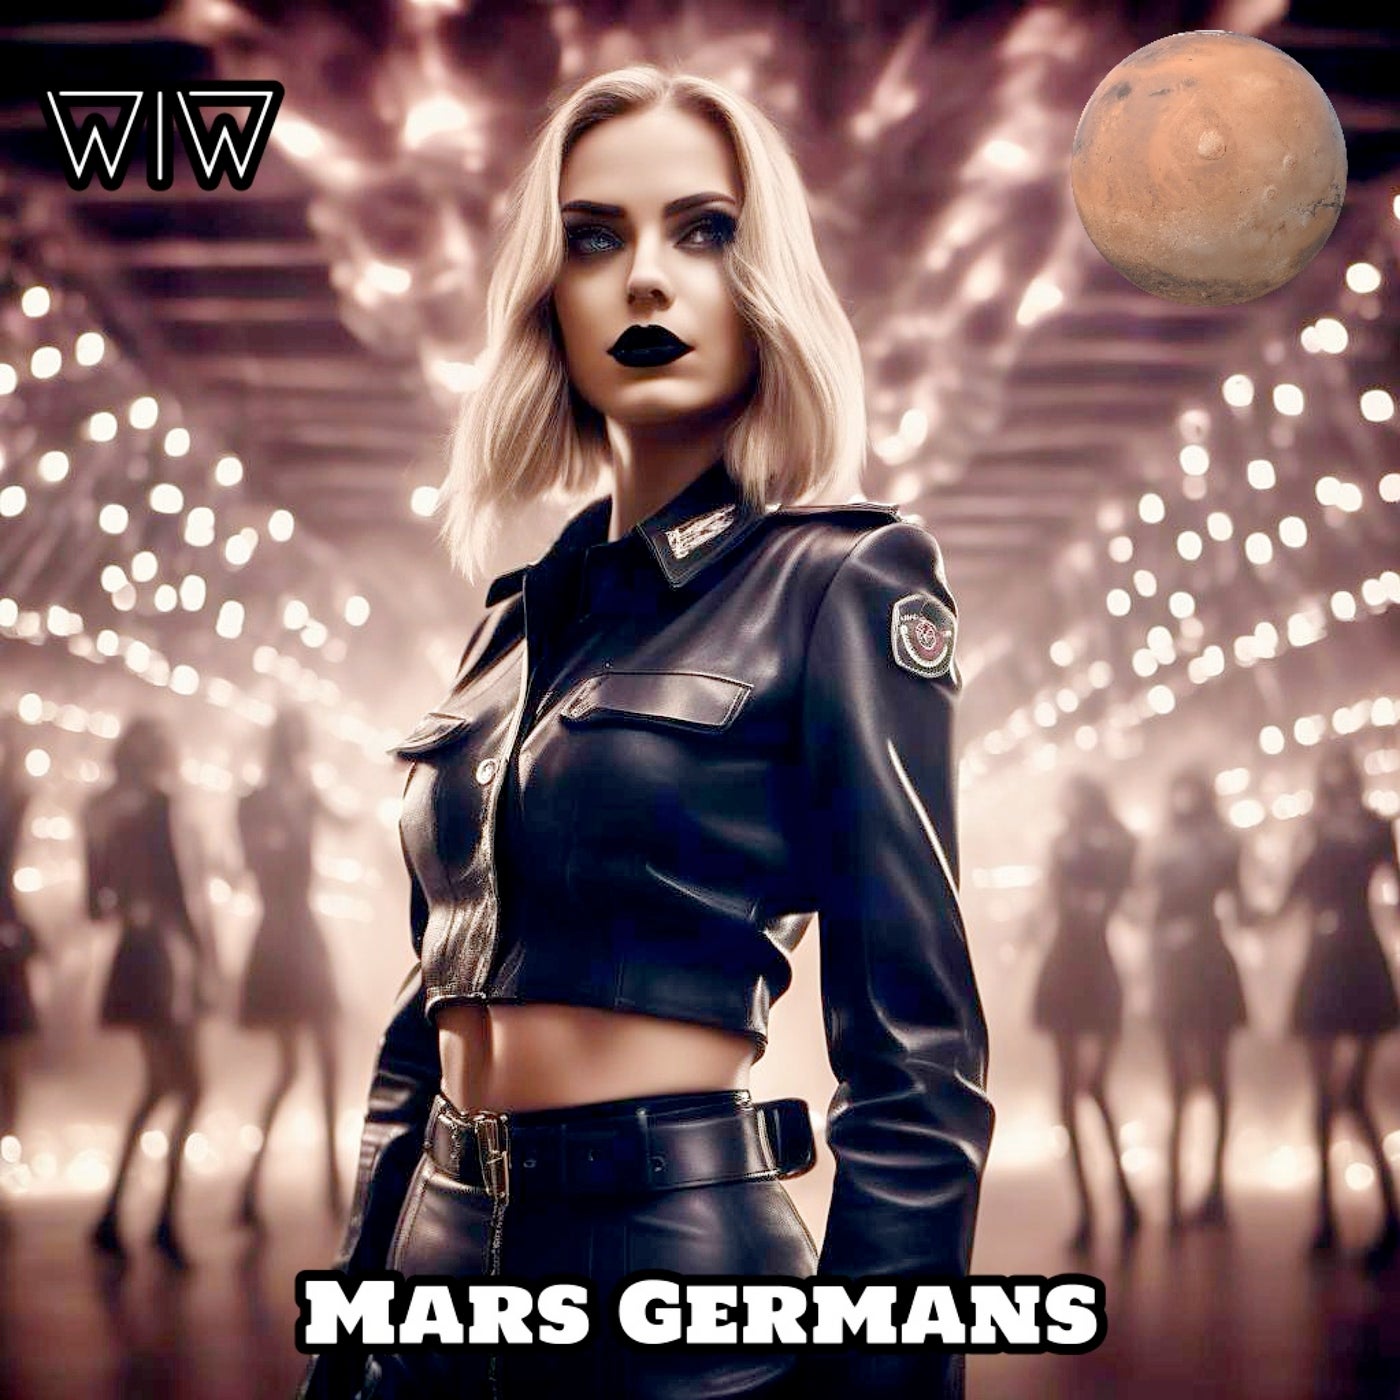 Mars Germans